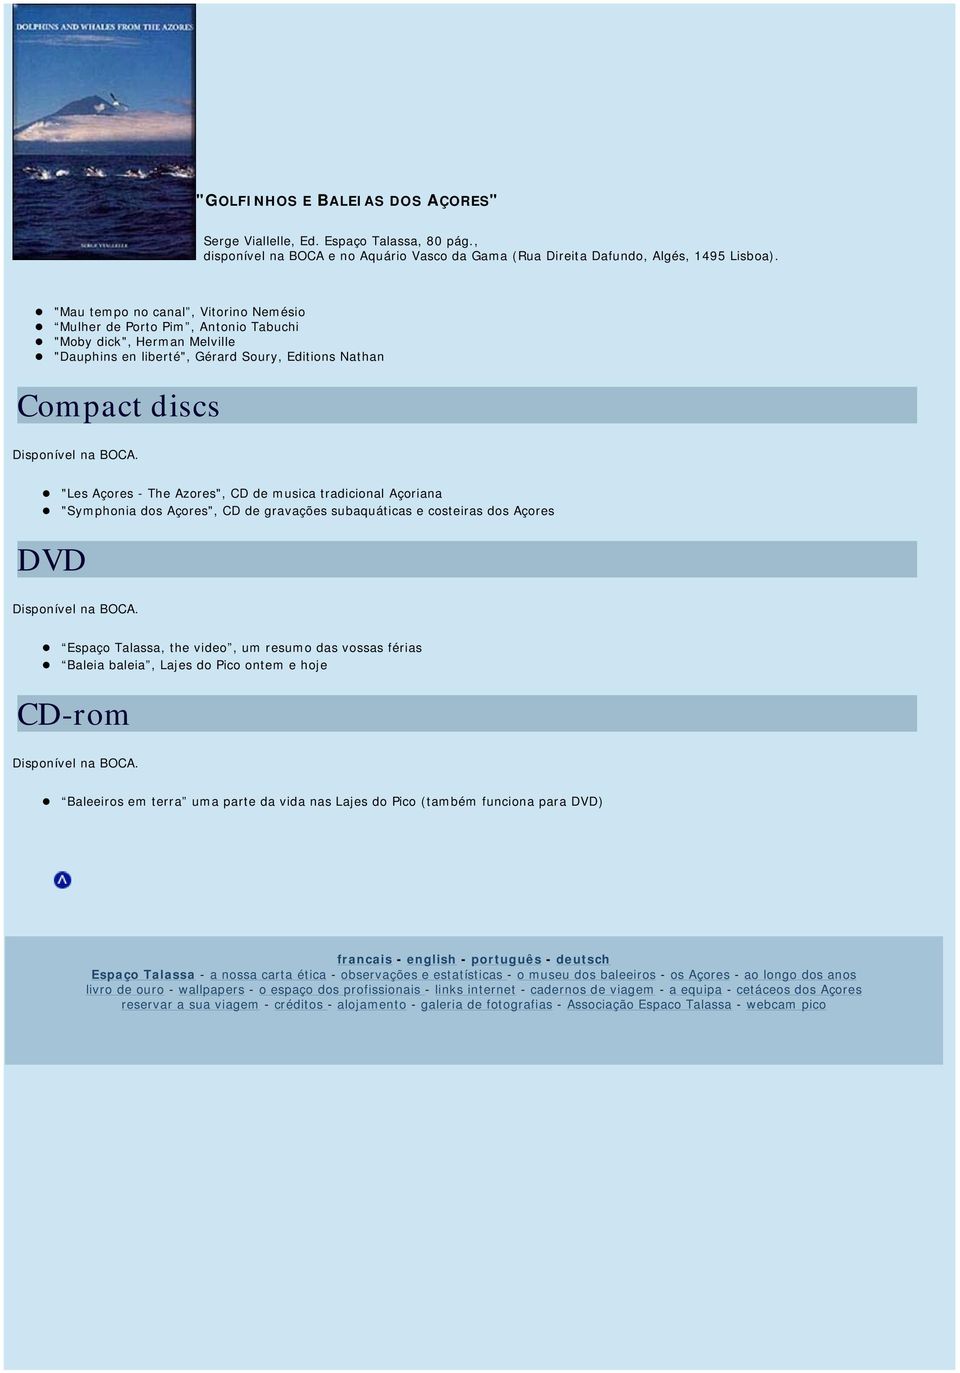 "Les Açores - The Azores", CD de musica tradicional Açoriana "Symphonia dos Açores", CD de gravações subaquáticas e costeiras dos Açores DVD Disponível na BOCA.